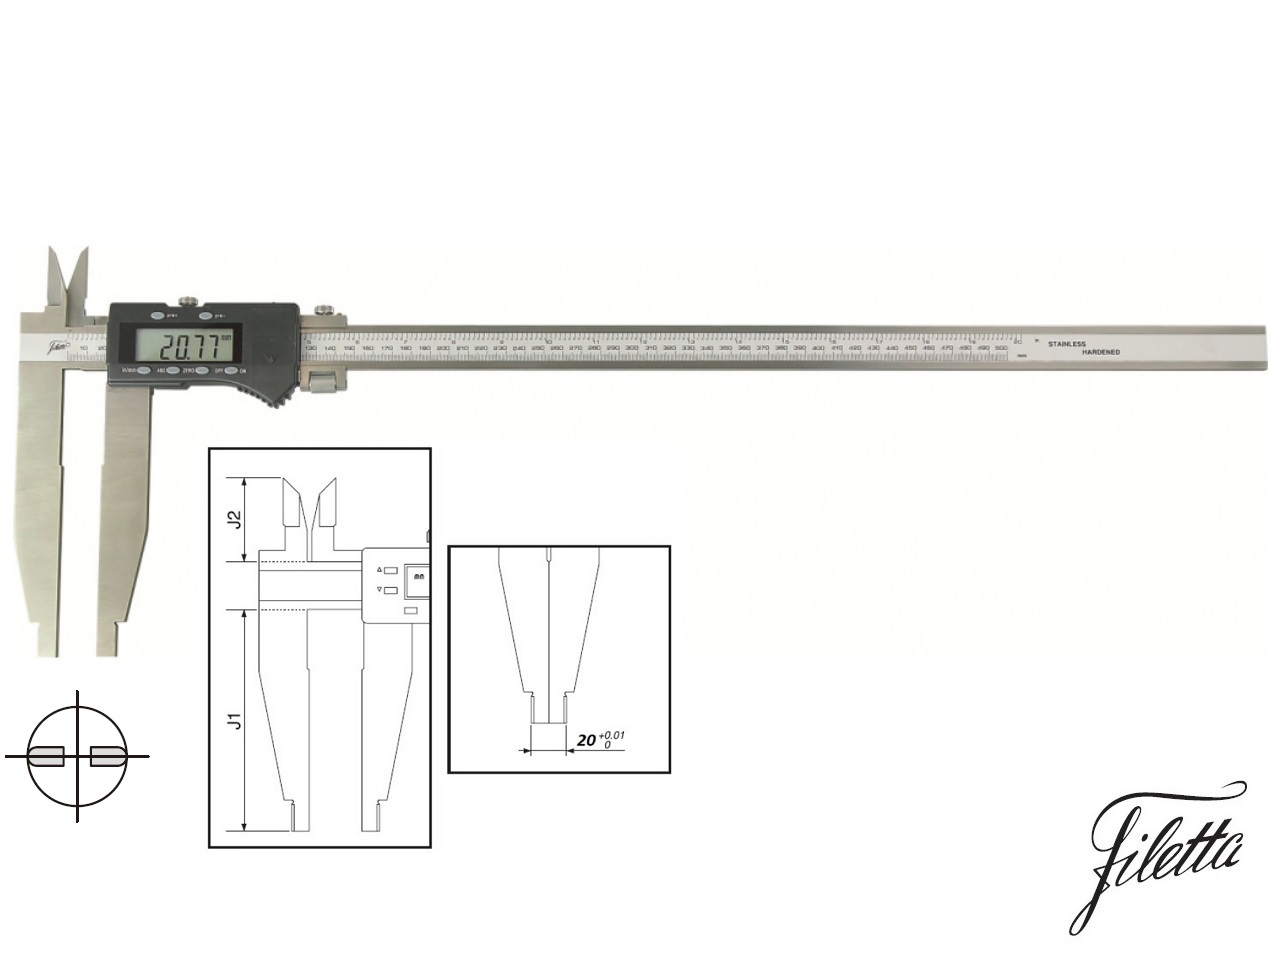 Digitální posuvné měřítko Filetta 0-1000/200 mm s měřicími nožíky pro vnitřní měření